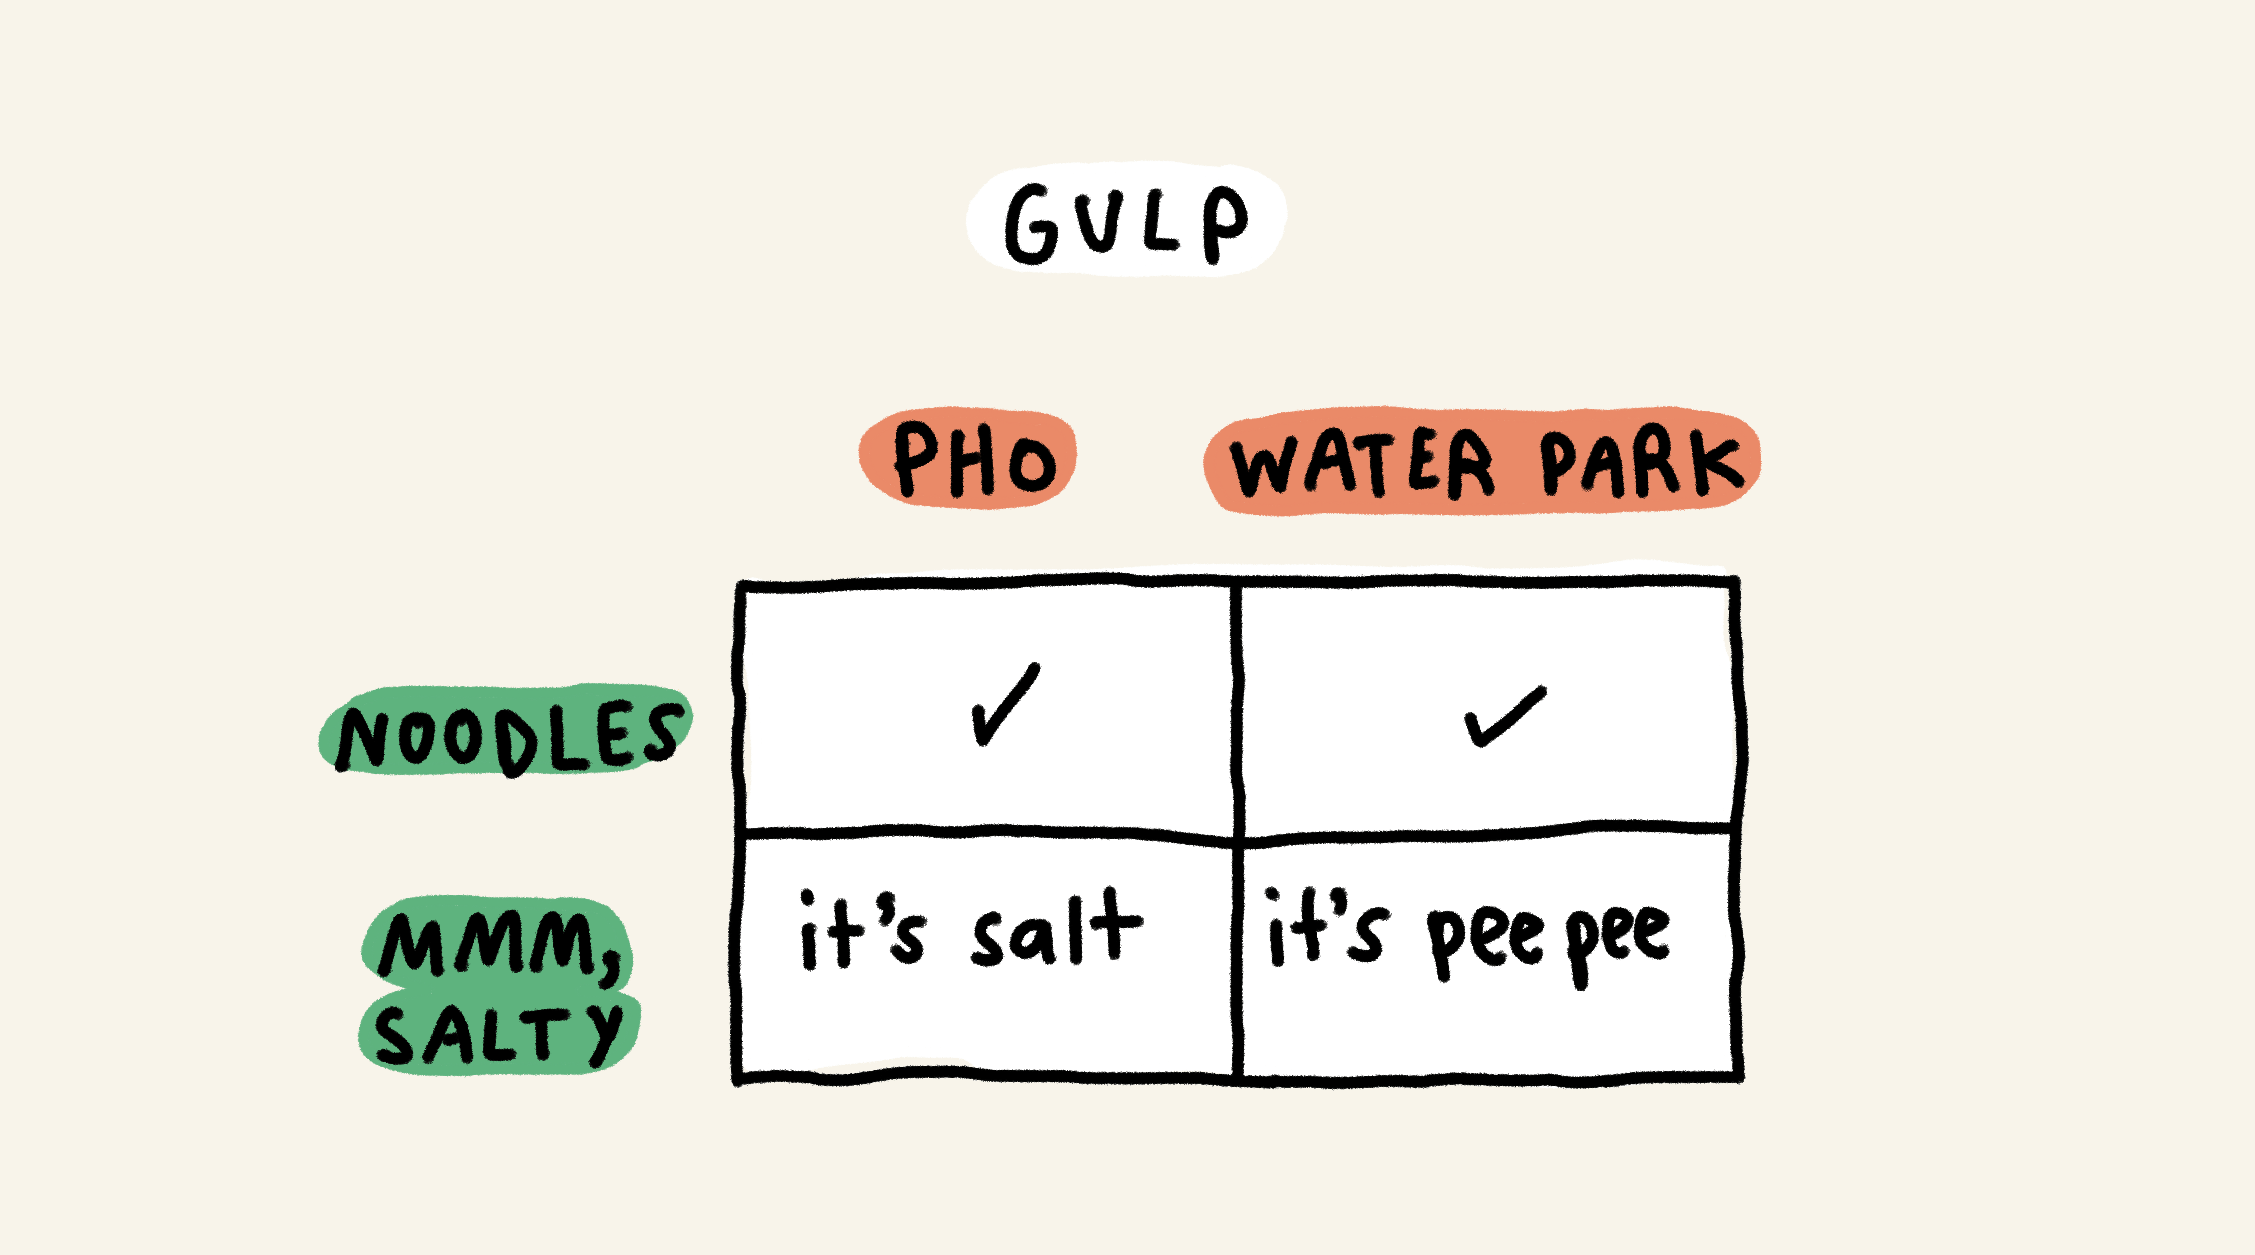 Gulp

Pho + noodles = ✓
Water park + noodles = ✓
Pho + mmm, salty = it's salt
Water park + mmm, salty = it's pee pee